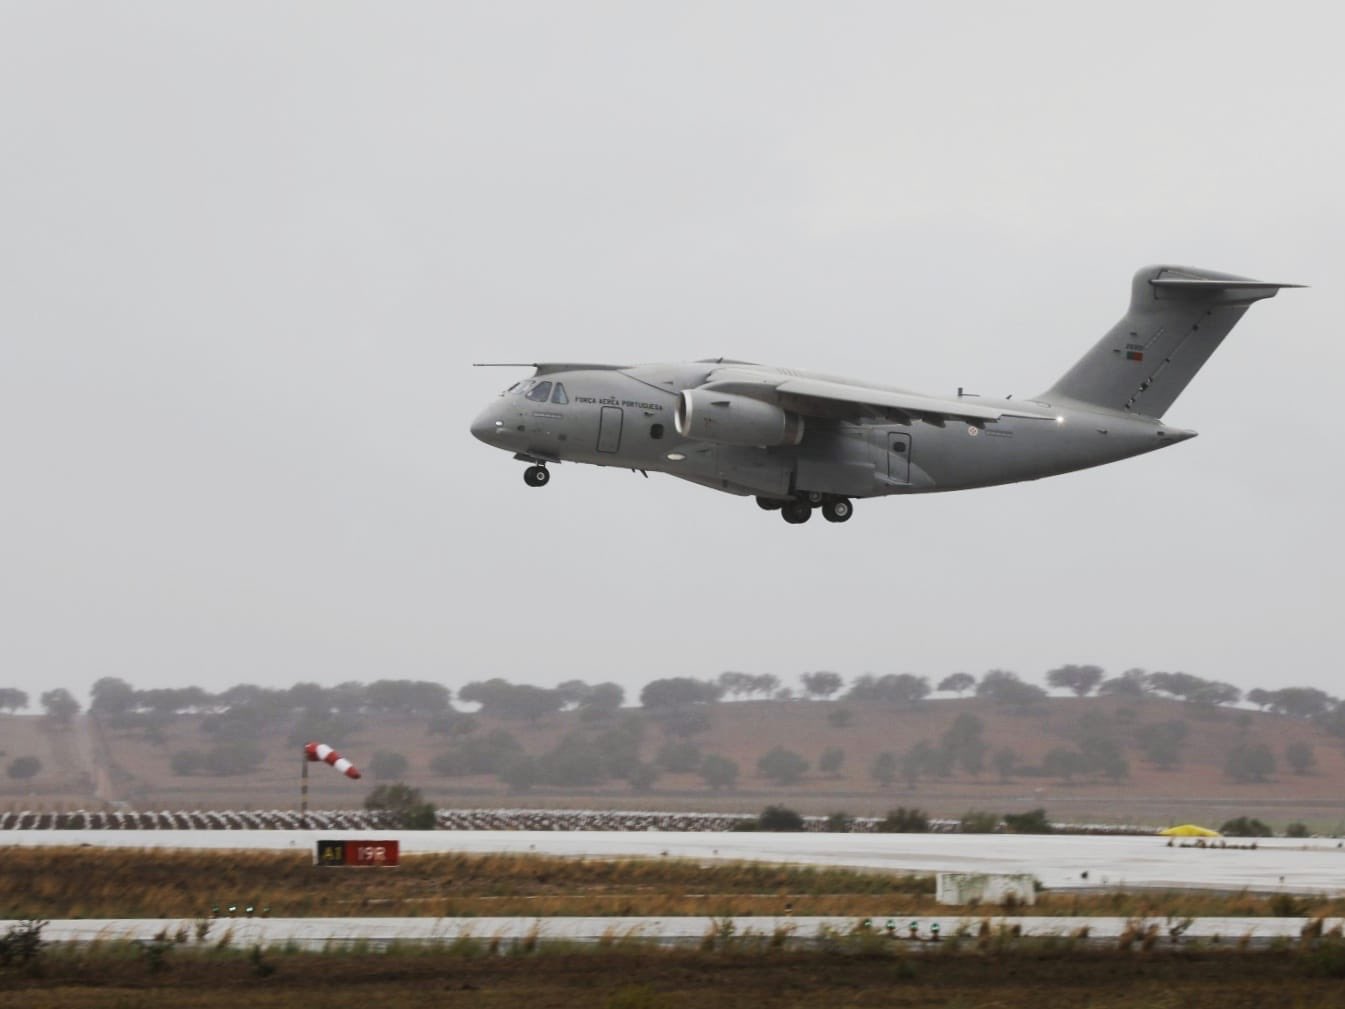 巴西Embraer航太工業公司:交付葡萄牙空軍首架C-390